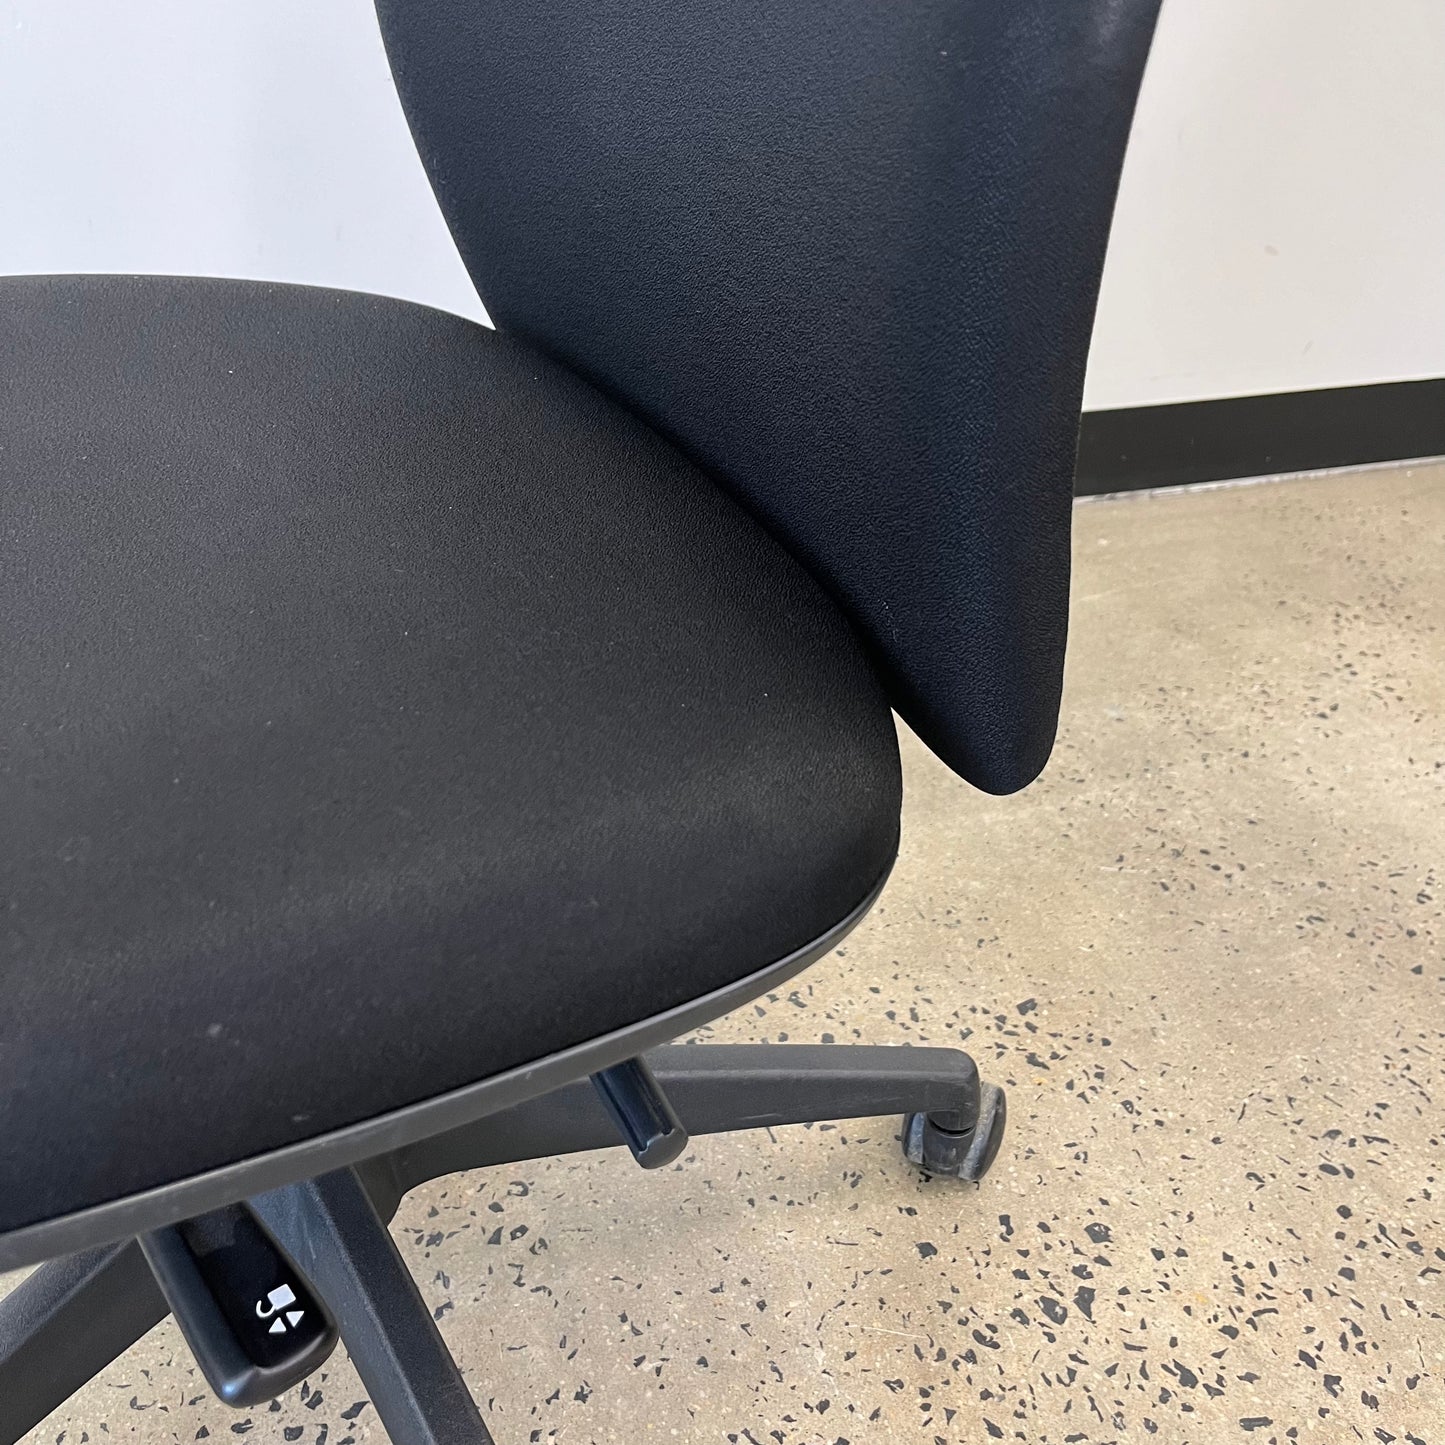 Steelcase APT Task Black Office Chair